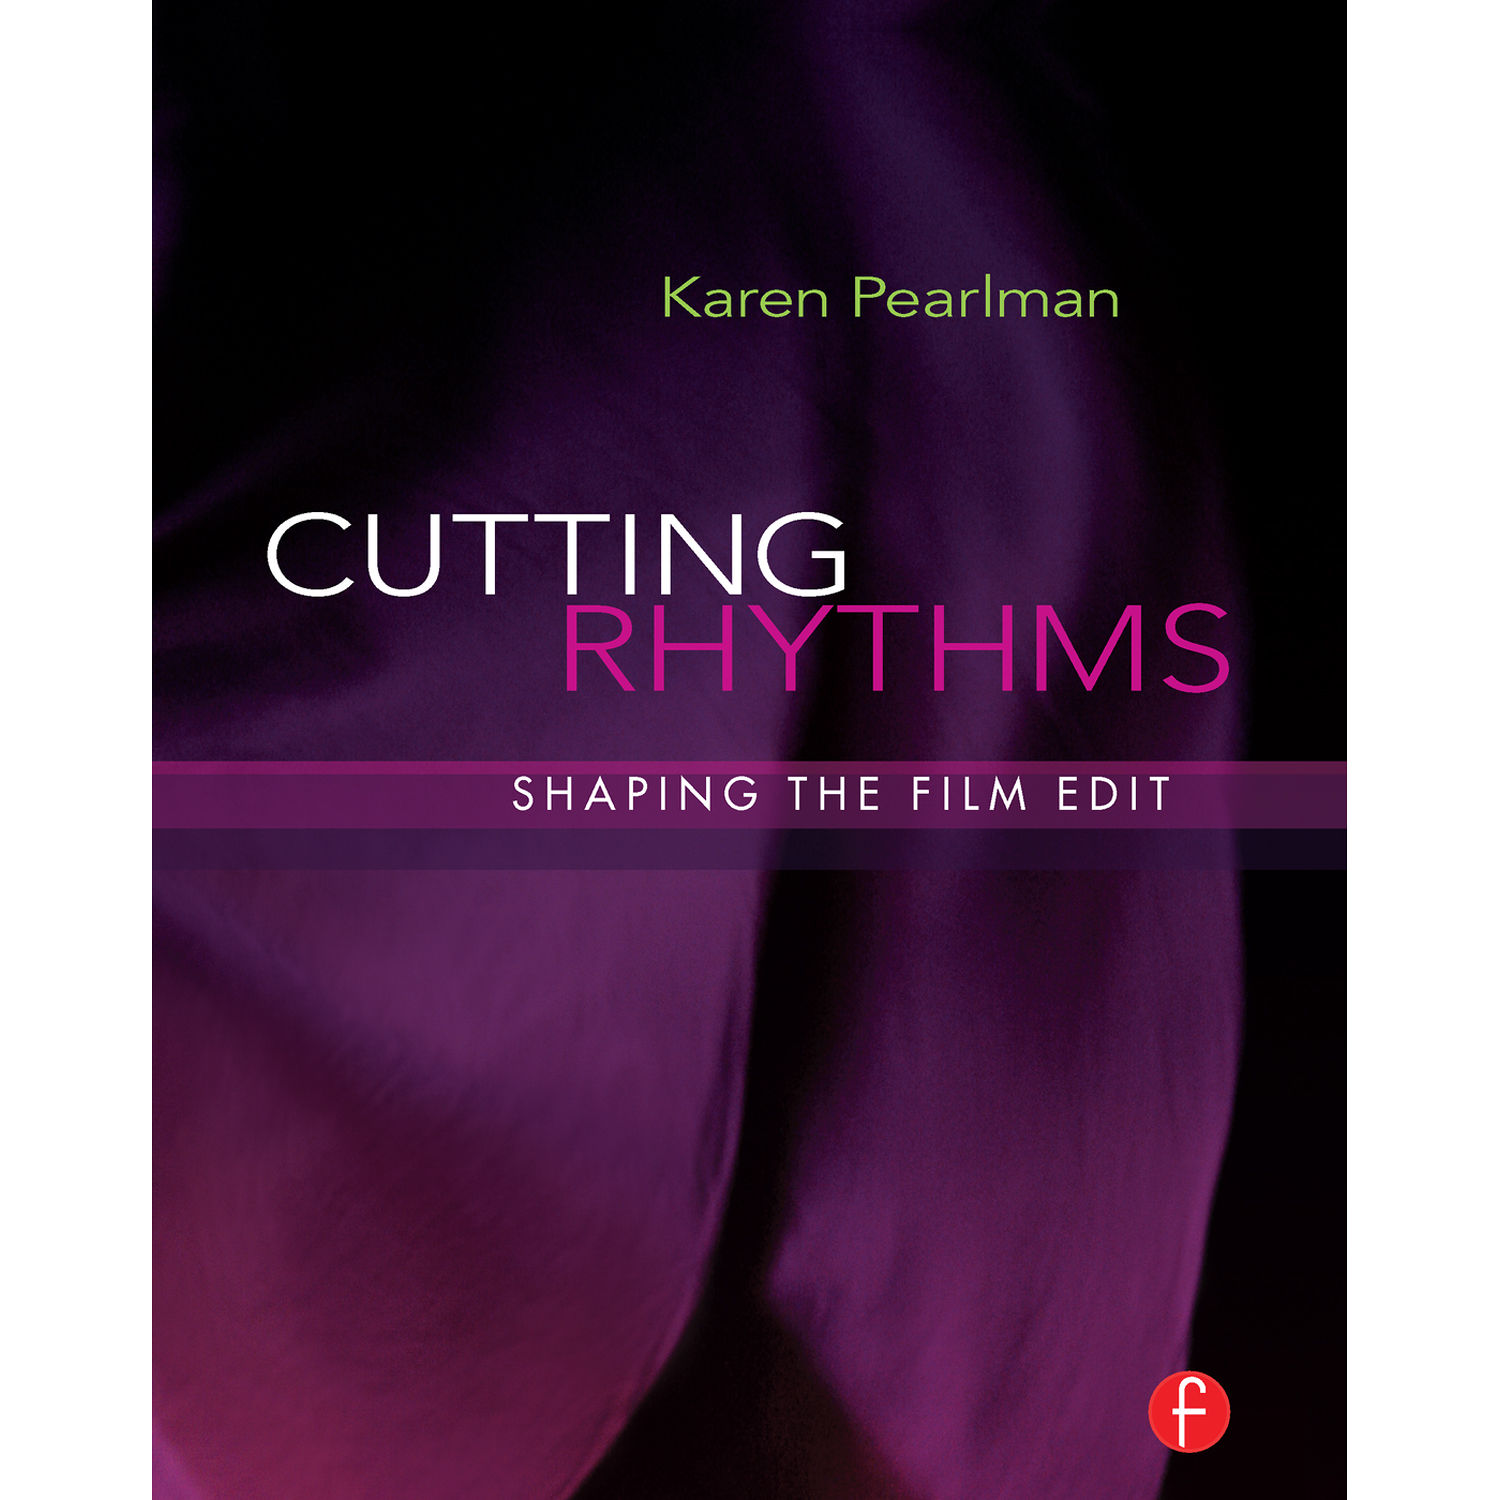 Cutting Rhythms book cover